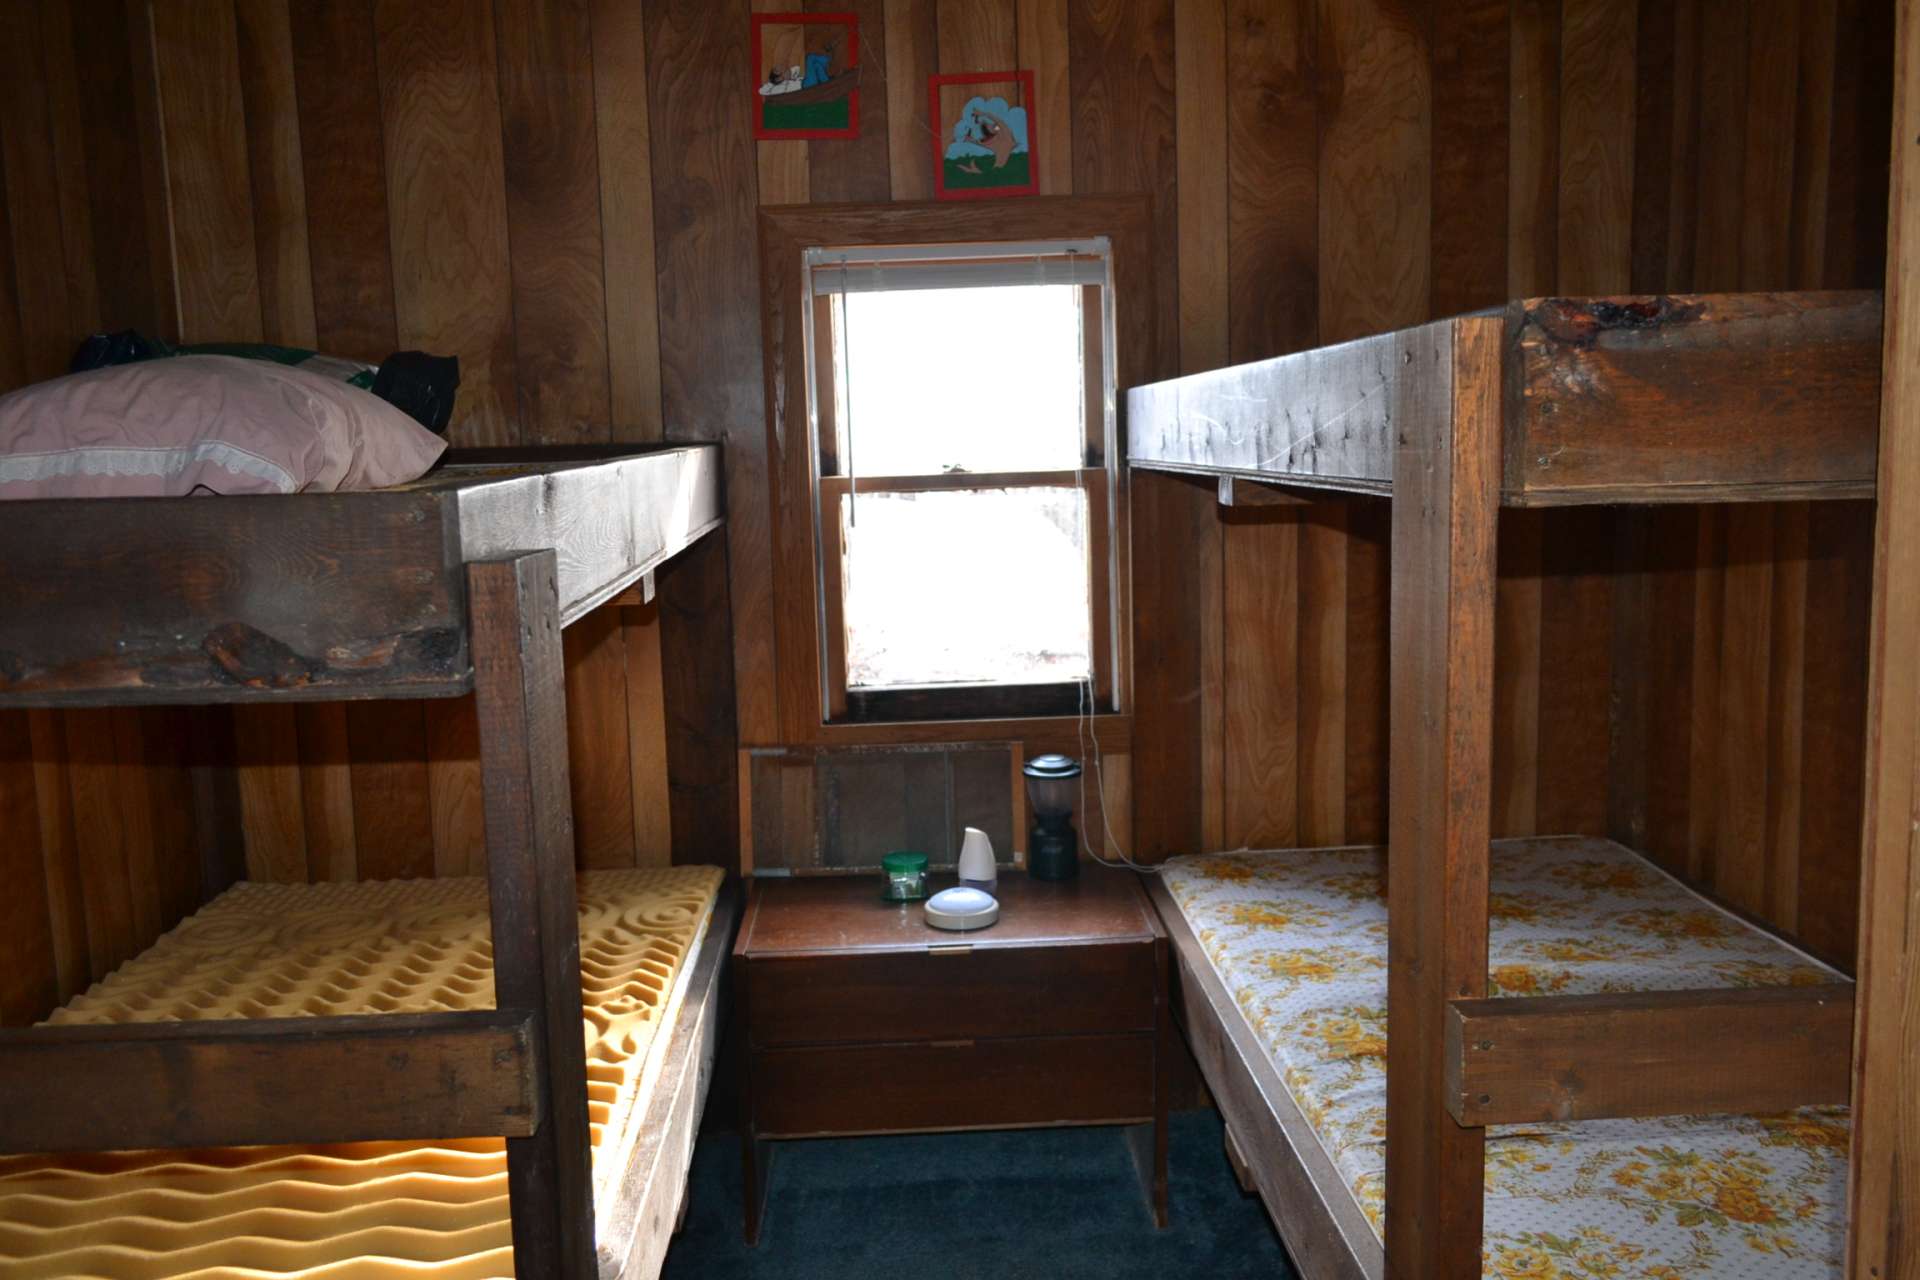 Both cozy bedrooms feature built-in bunk beds.